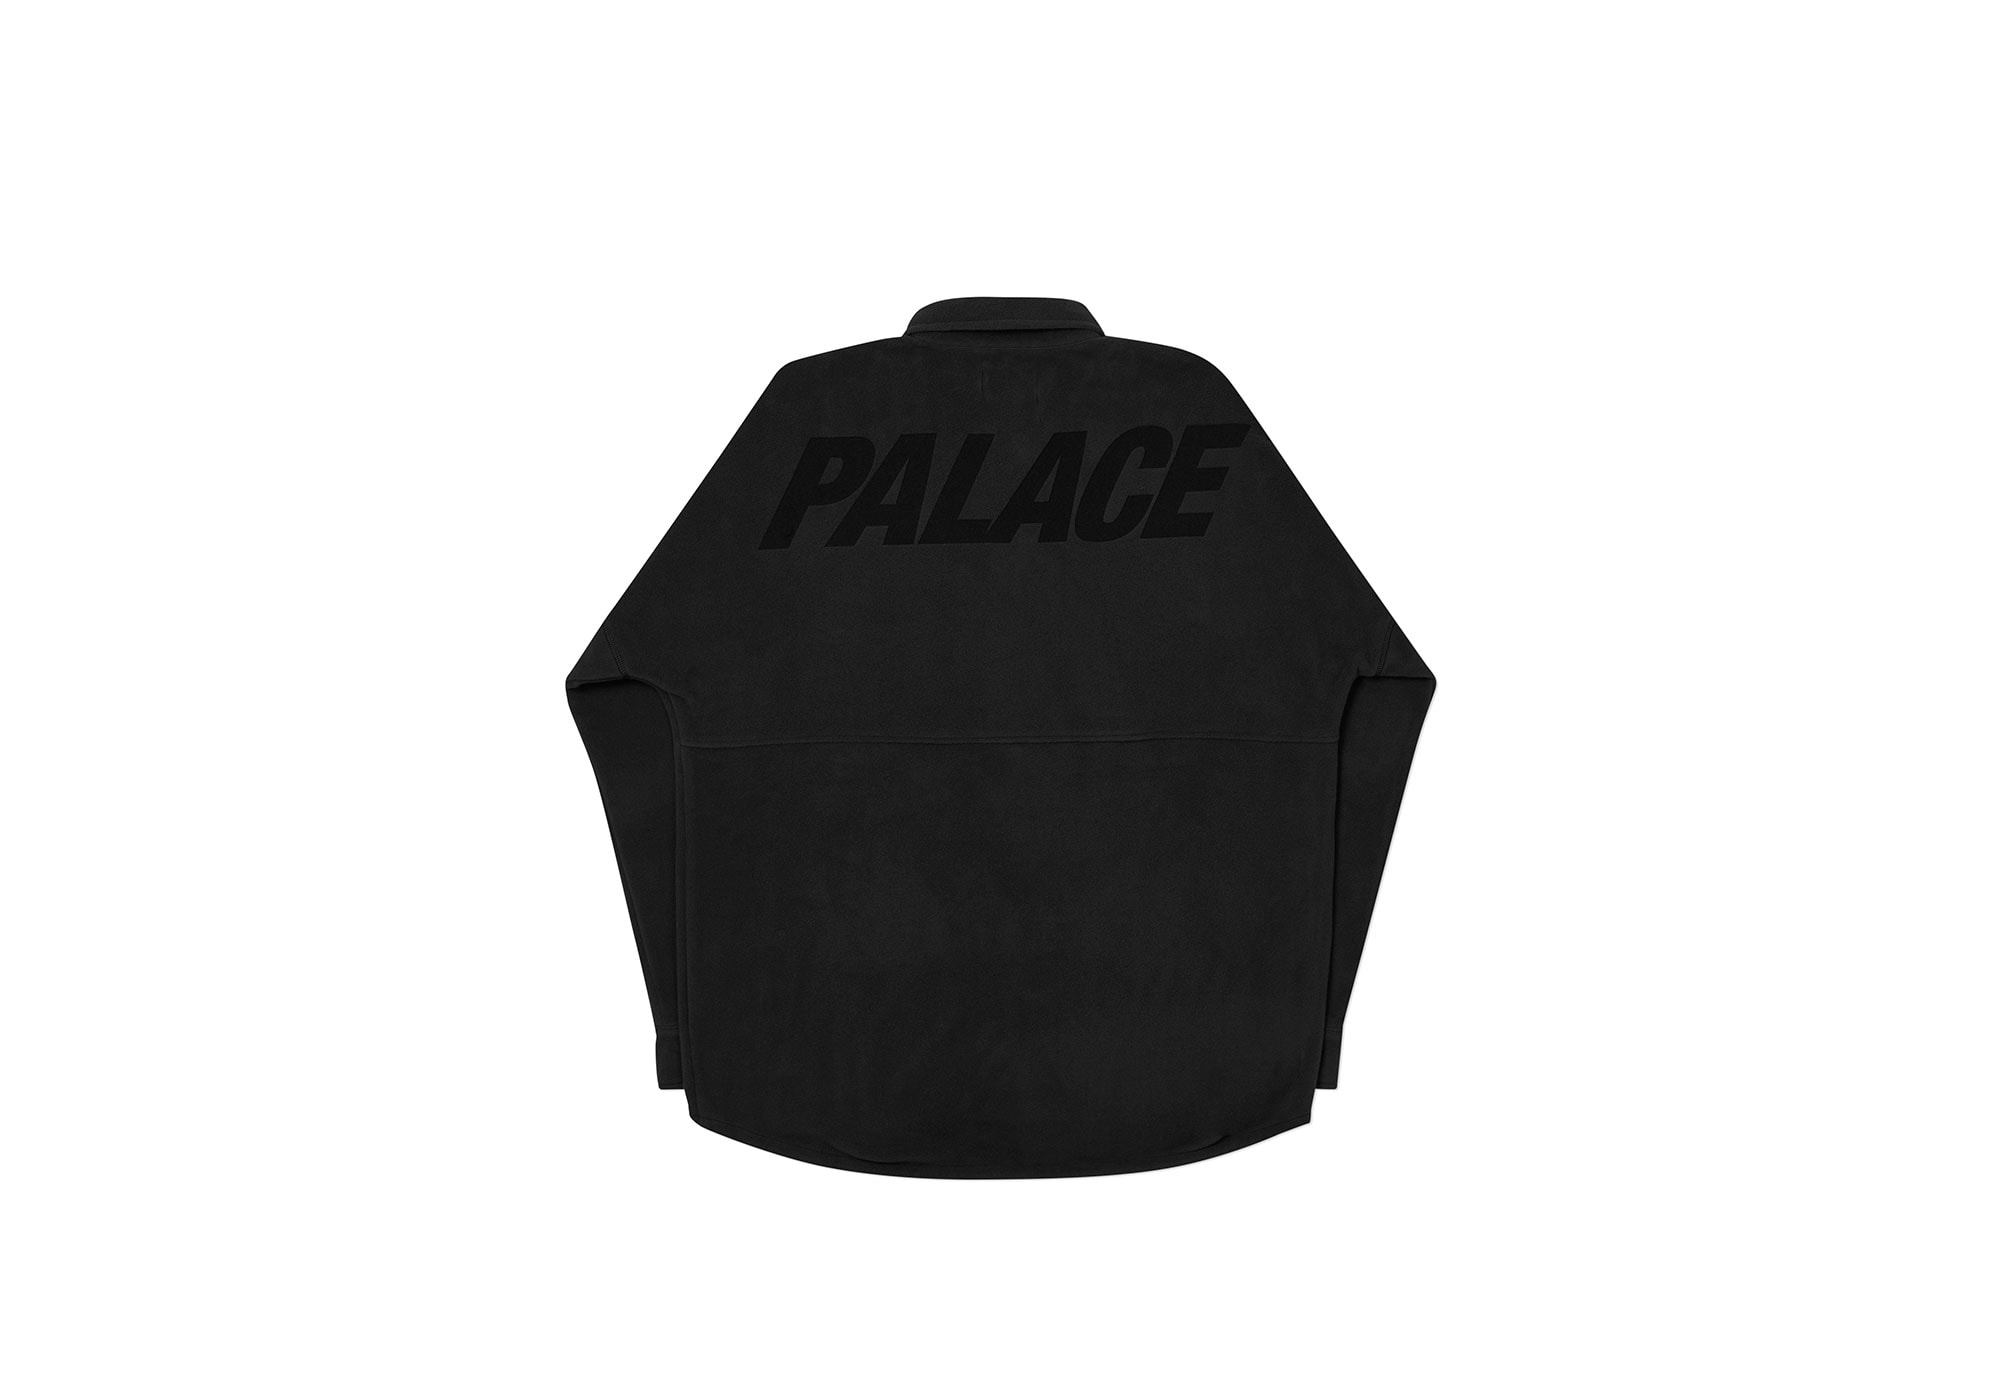 Palace Skateboards 2020 冬季系列恤衫單品一覽